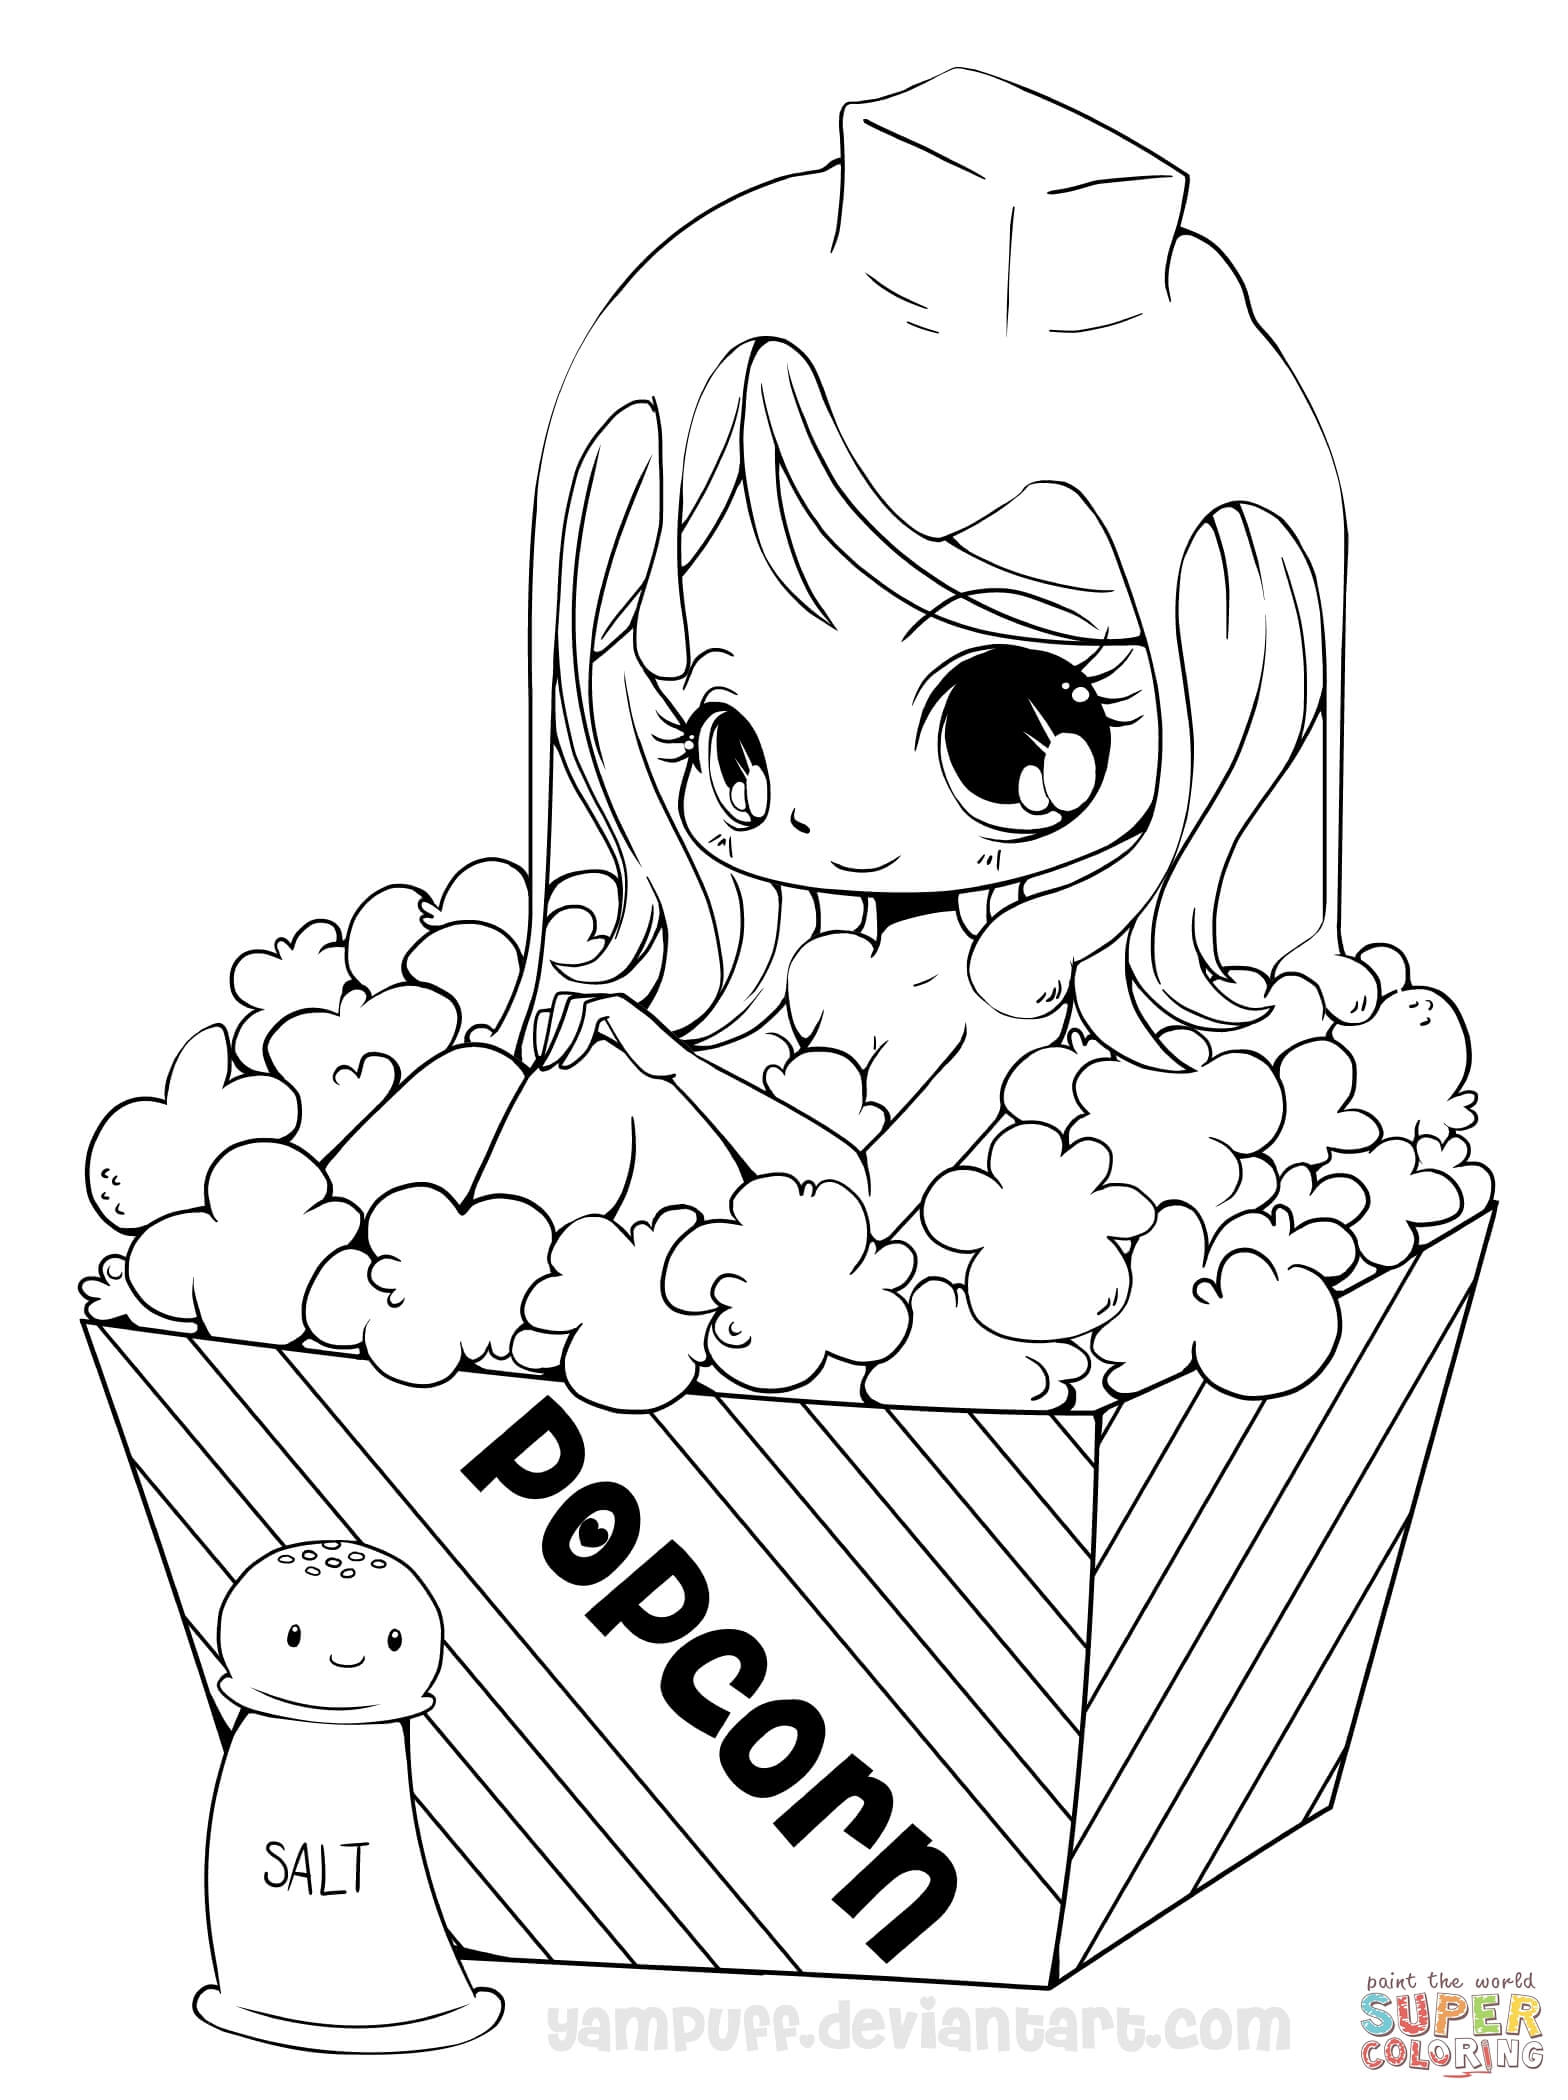 Chibi Popcorn Girl Coloring Page | Free Printable Coloring Pages - Free Printable Coloring Pages For Girls